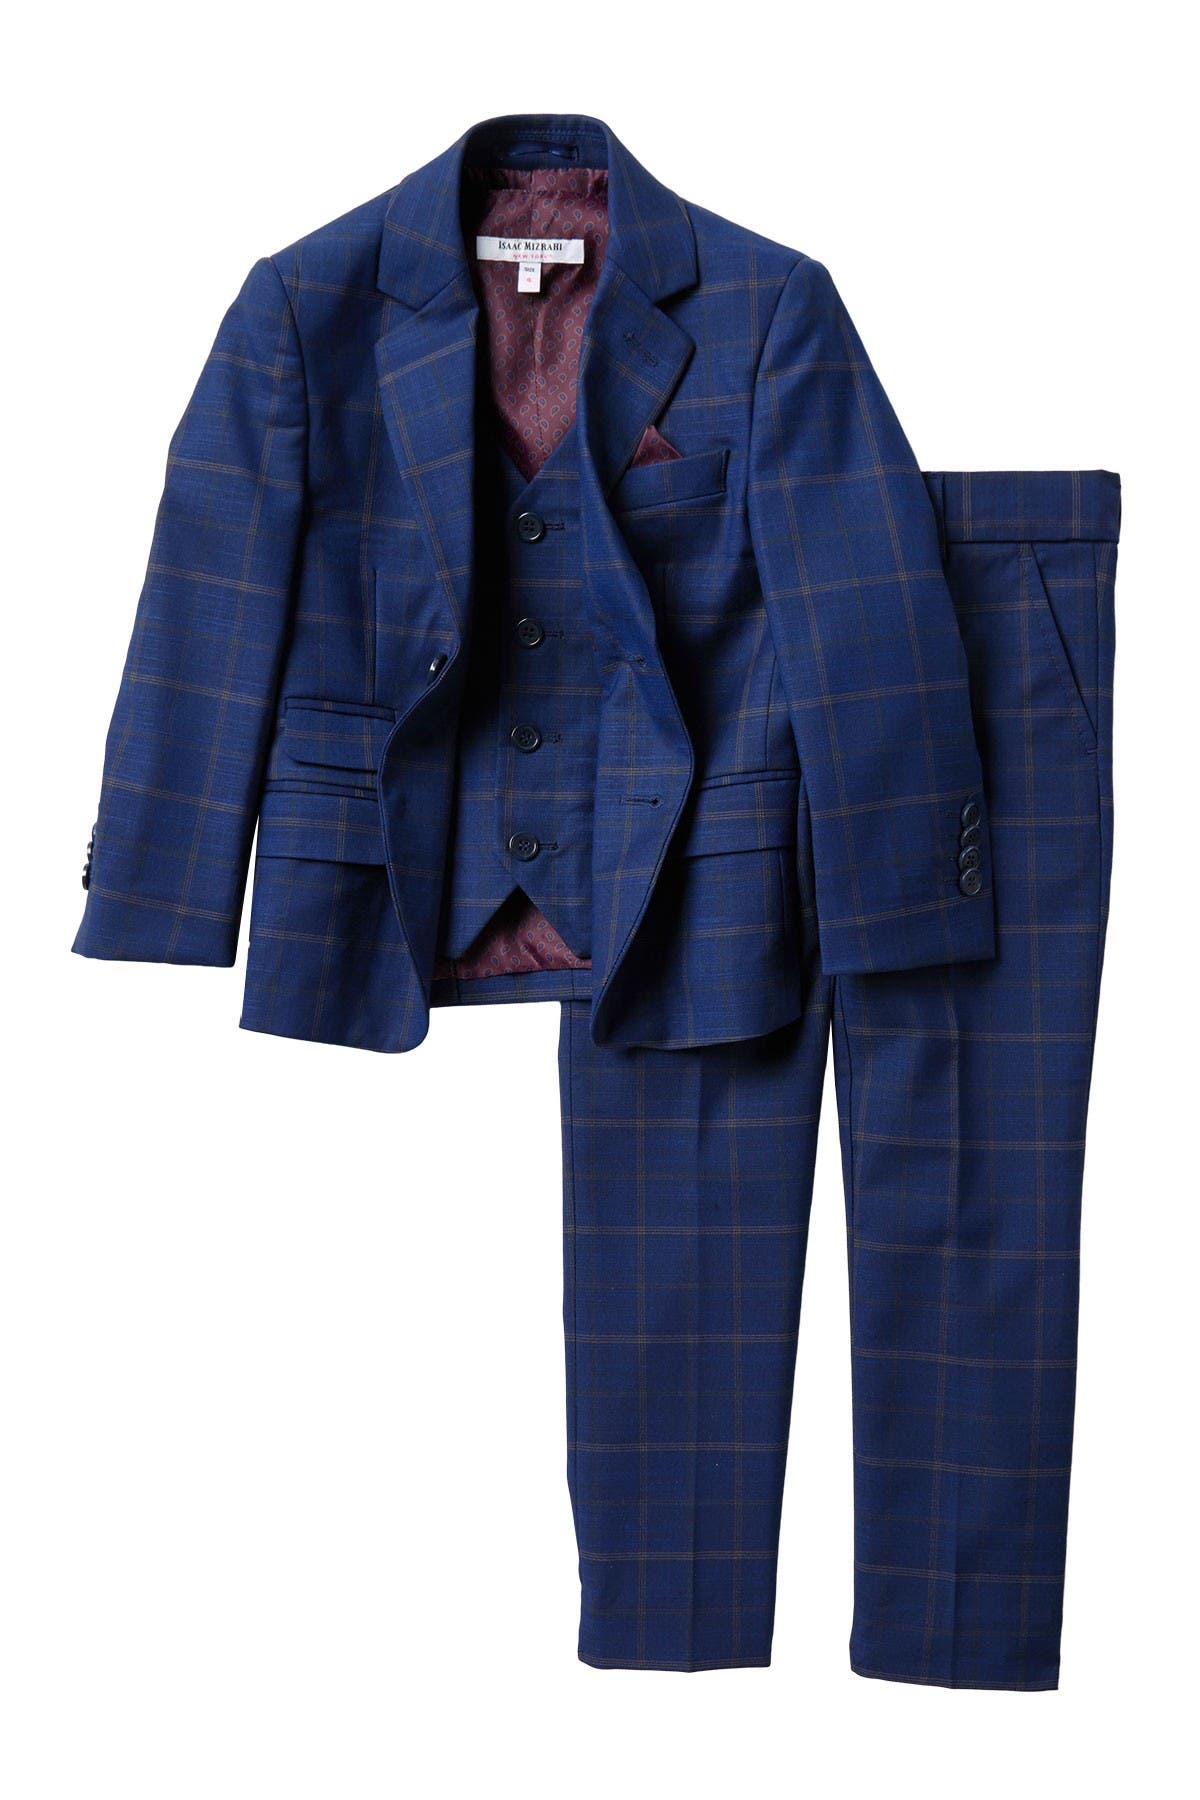 Isaac Mizrahi Boys 2-Piece Multi-Plaid Suit